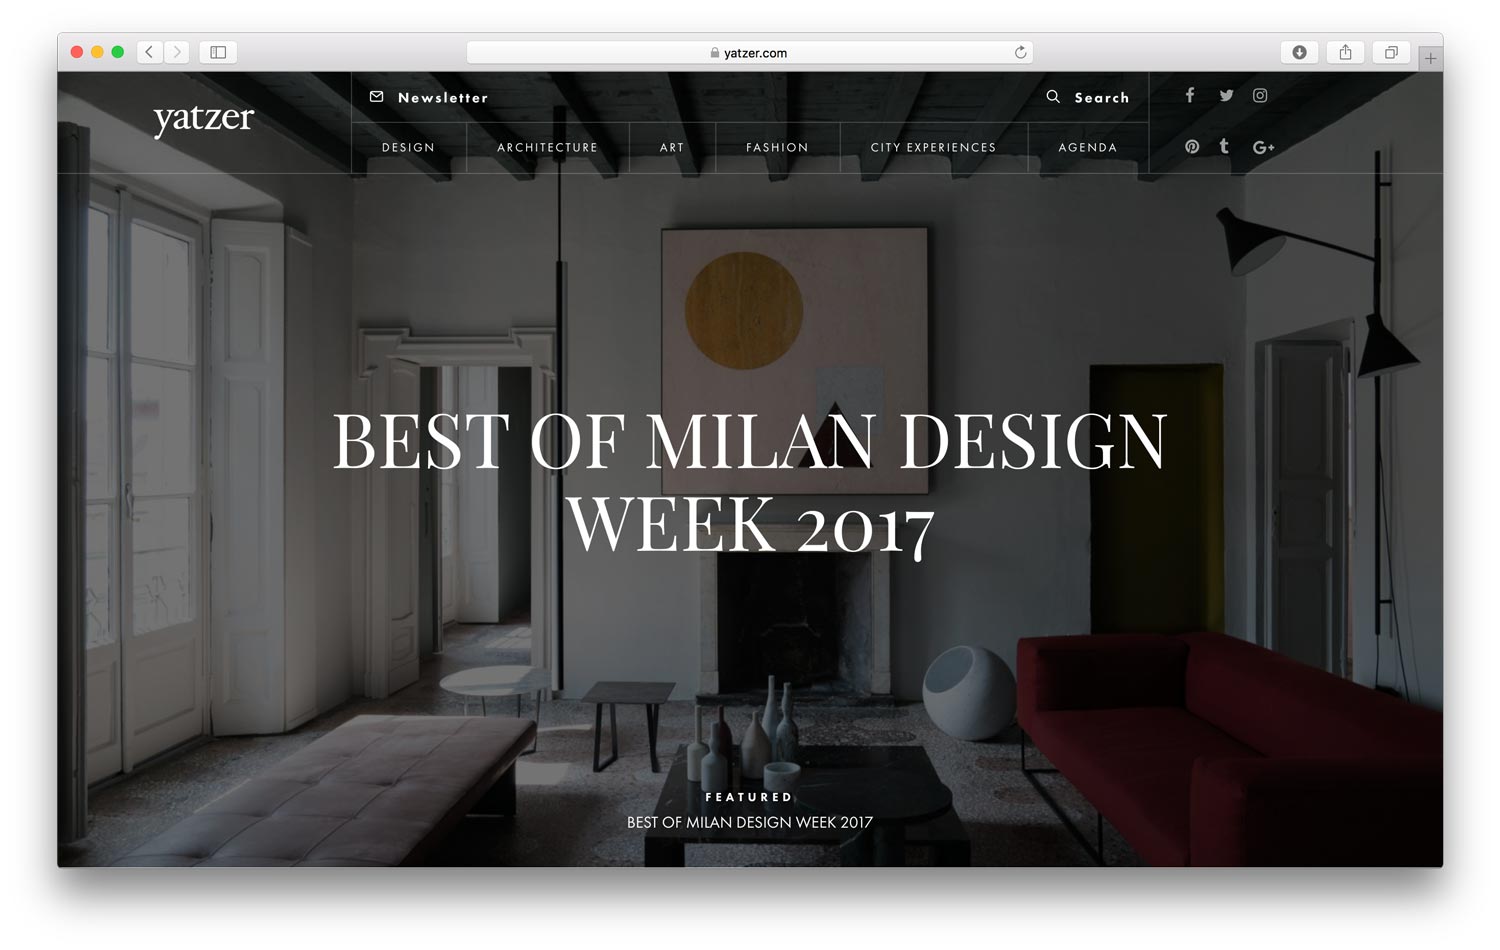 yatzer_best_of_milan_design_week_2017_01